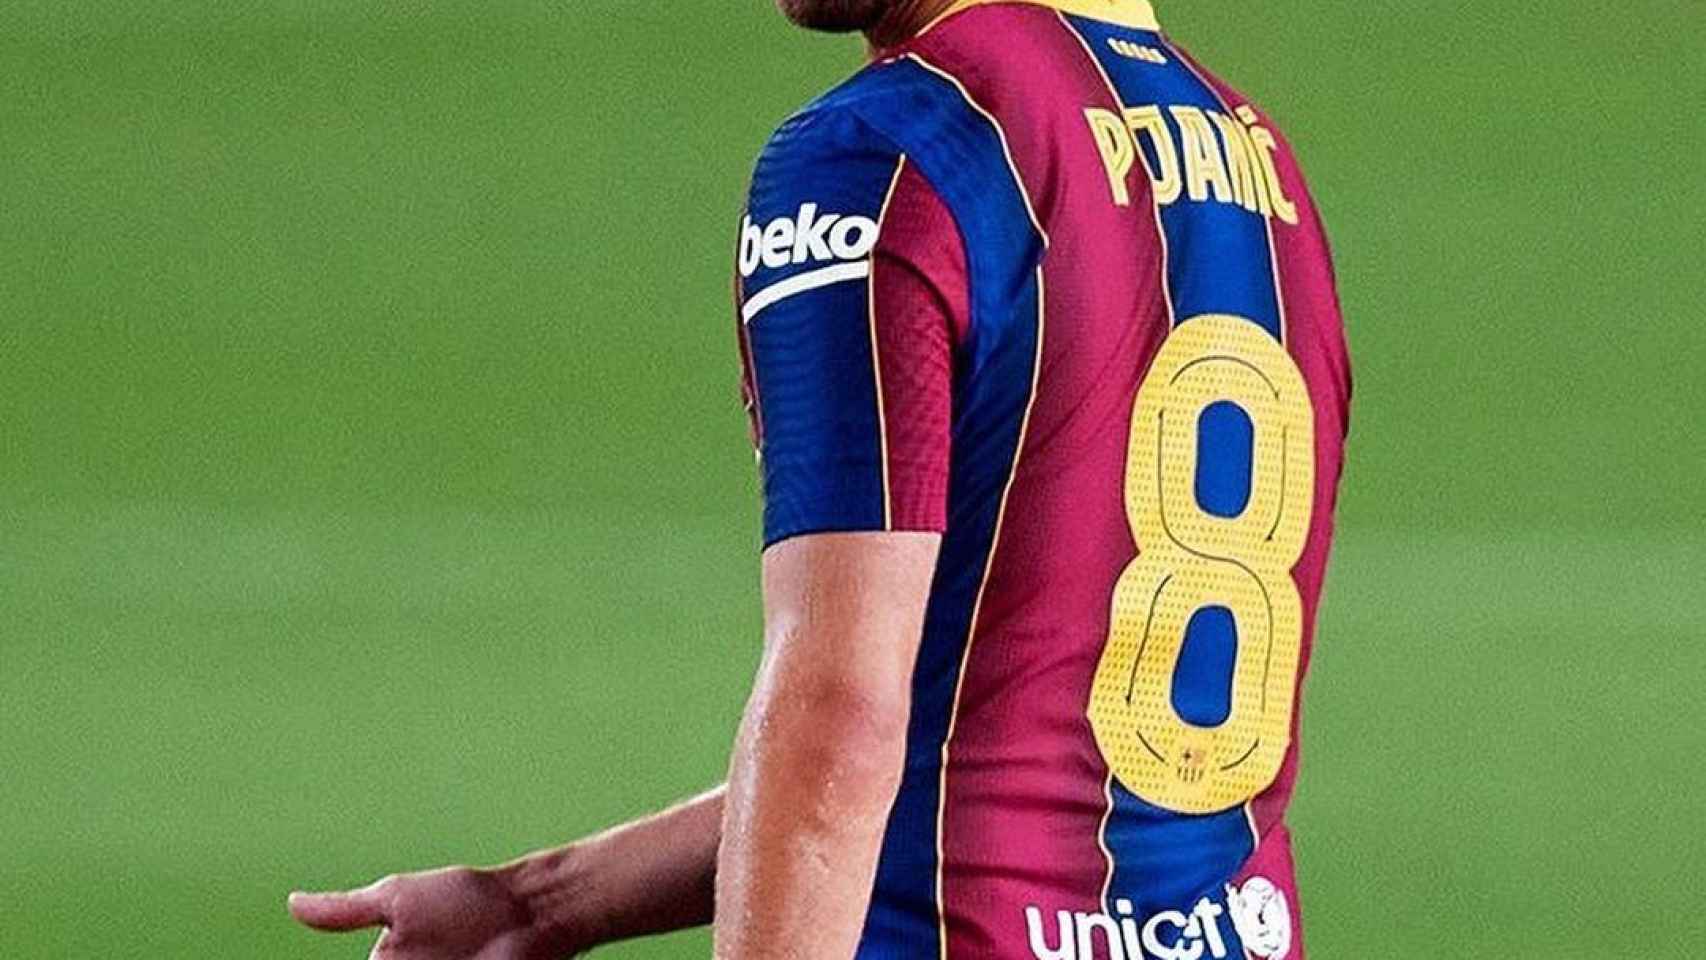 Miralem Pjanic, en un partido del Barcelona